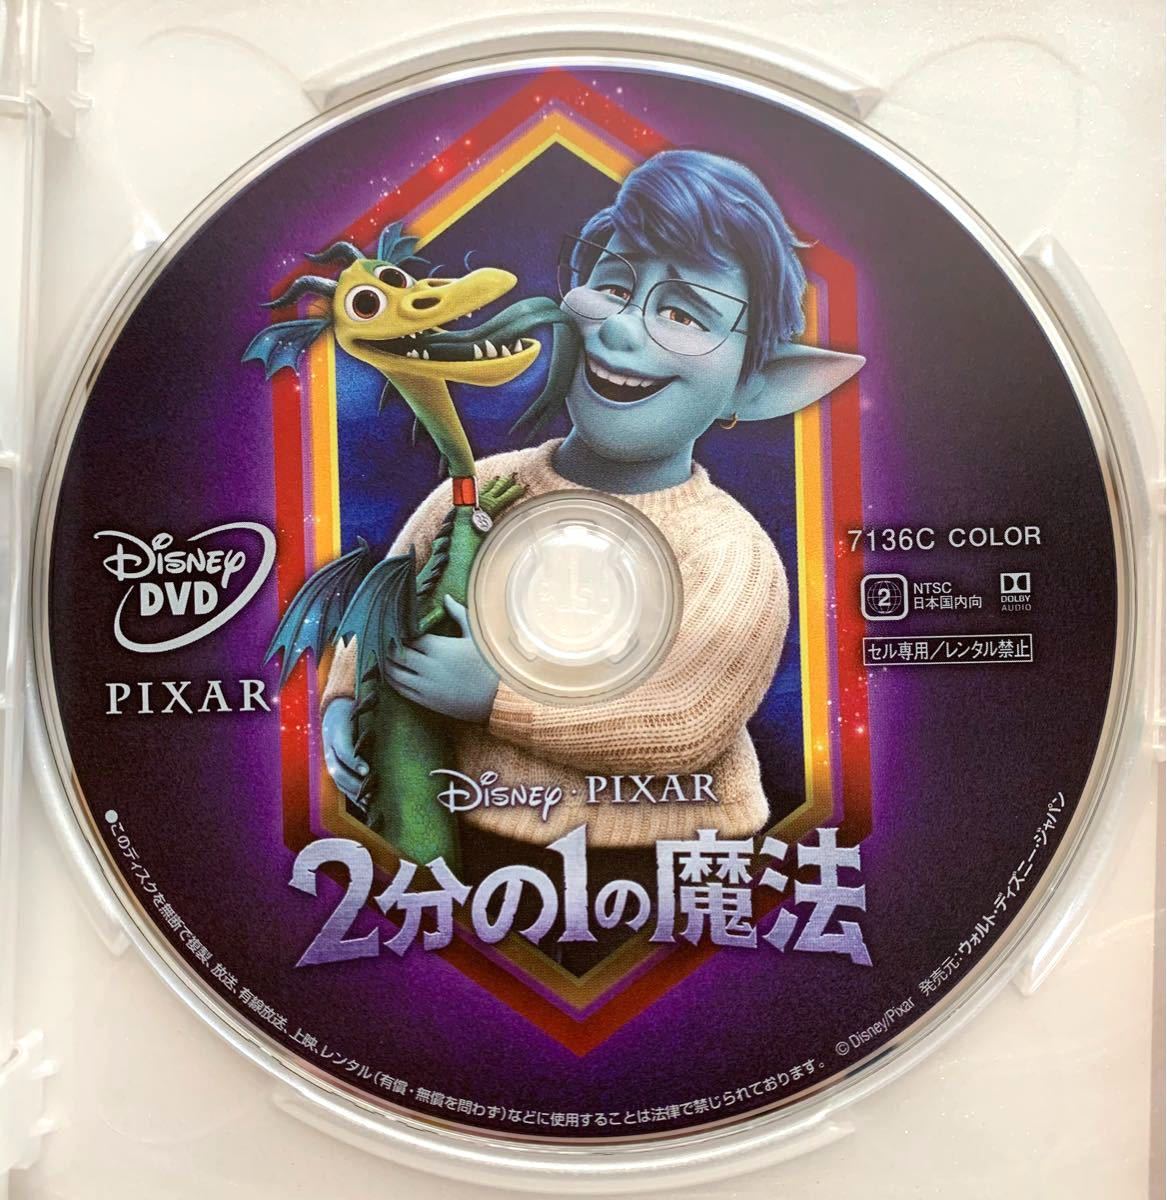 2分の1の魔法 DVD 国内正規版 新品未再生 MovieNEX ディズニー disney ピクサー